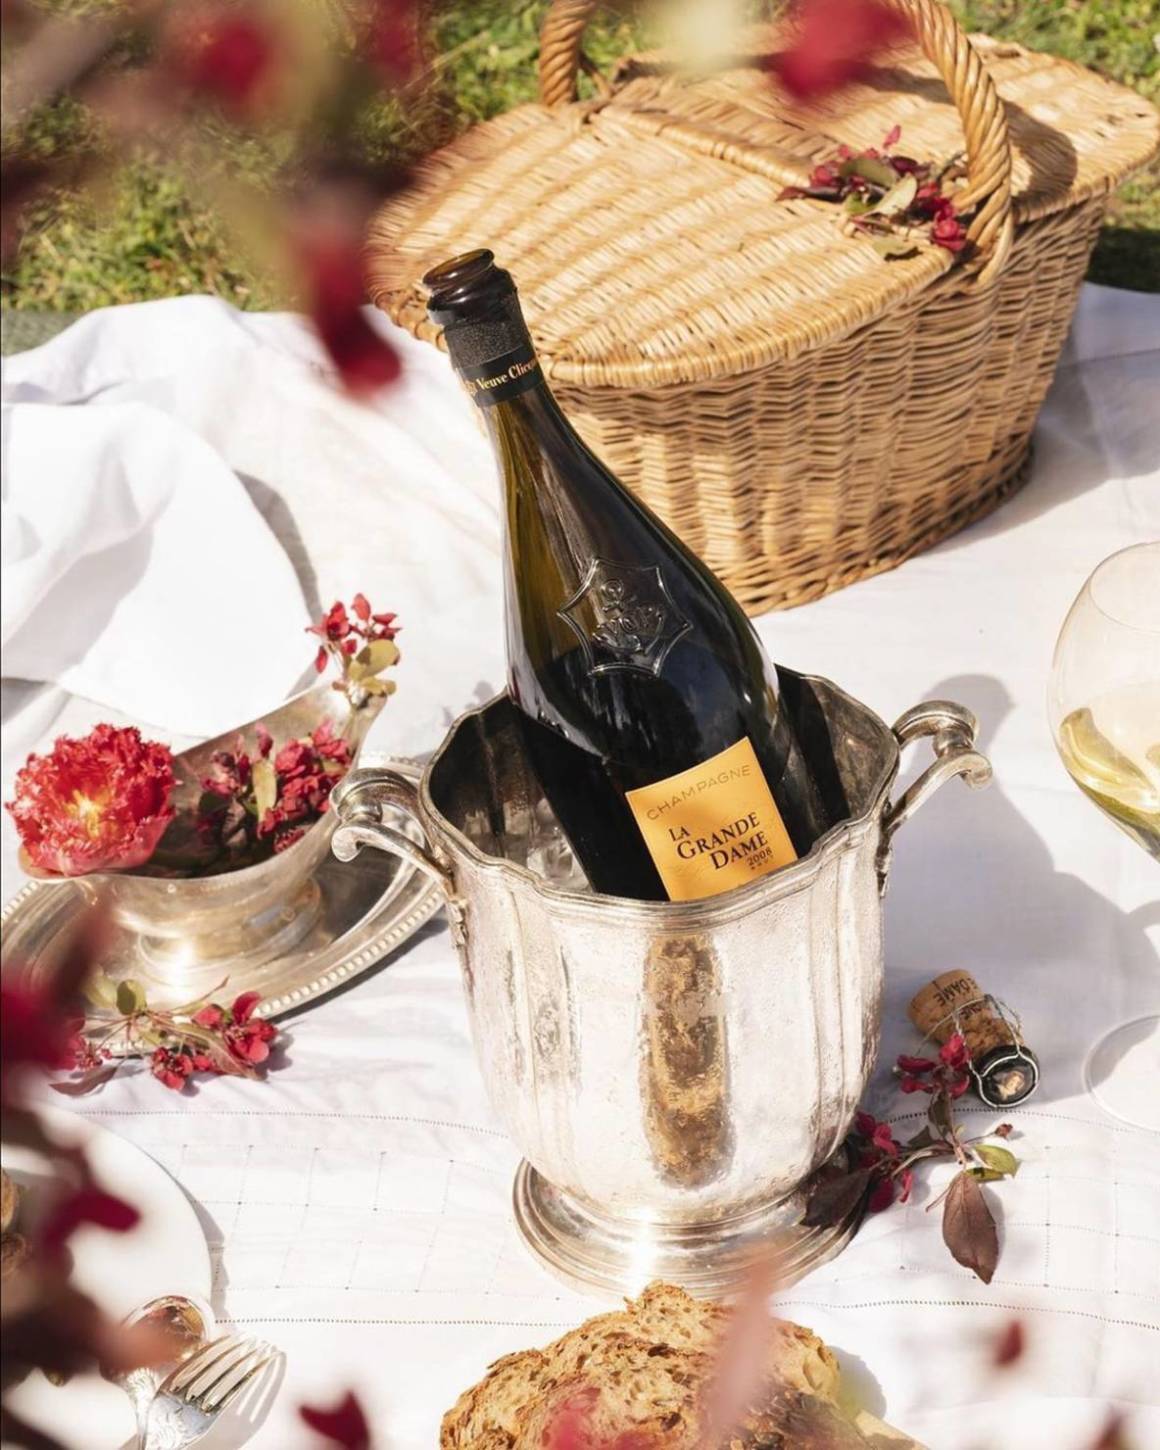 вдова клико, Veuve Clicquot, история шампанского, дом шампанских вин, шампанское, игристое